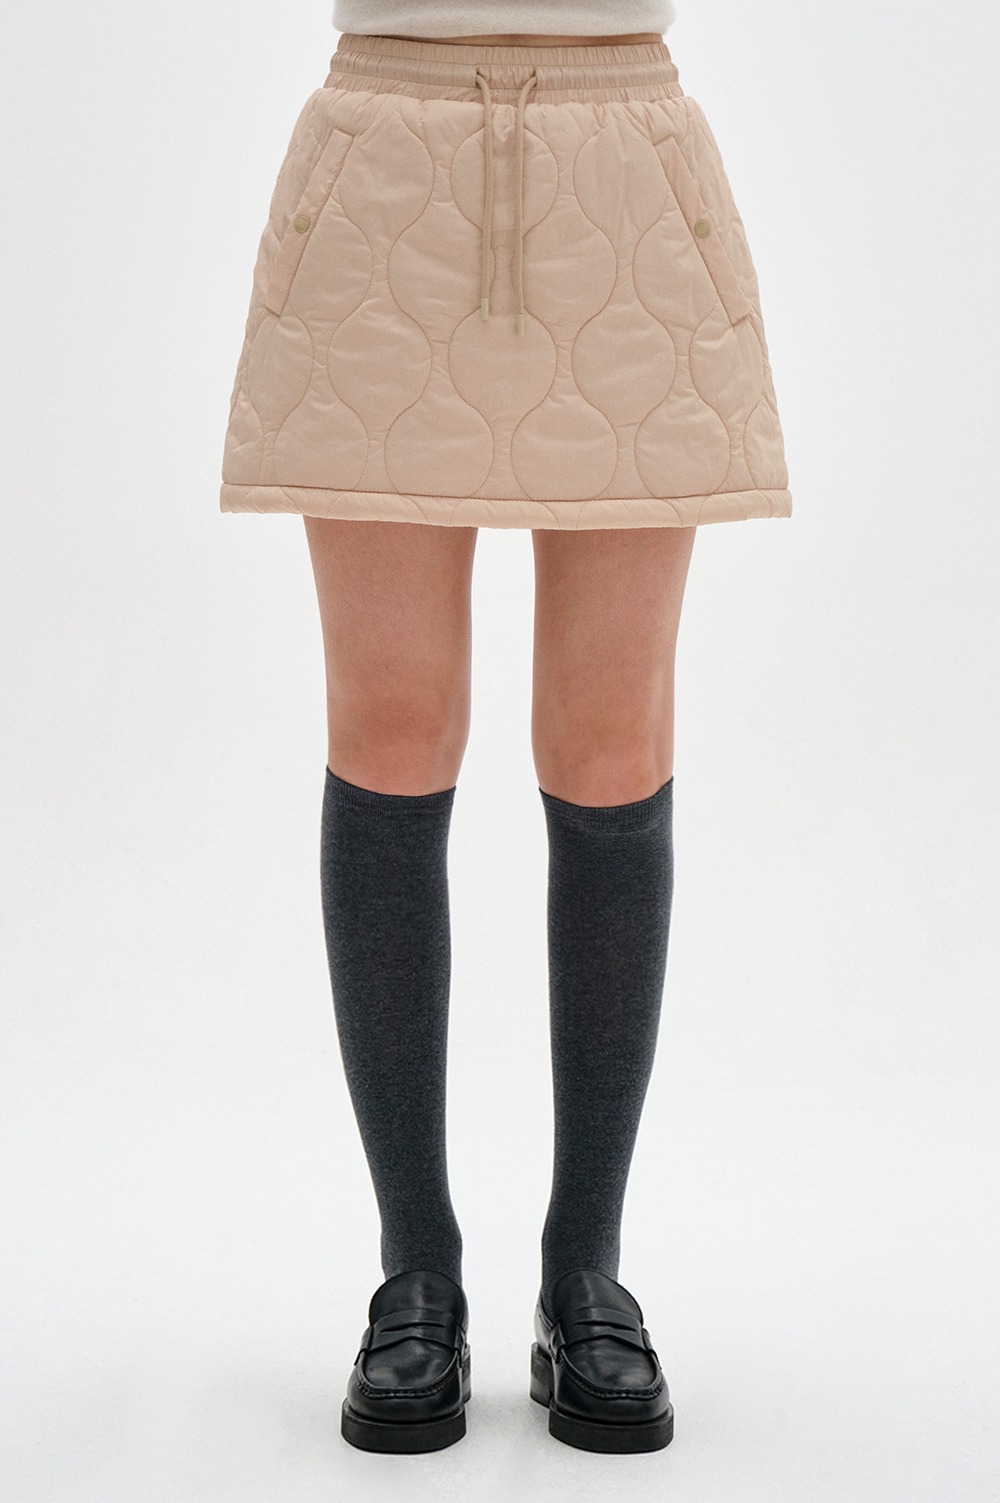 clove - [23FW clove] Quilting Skirt (Beige)